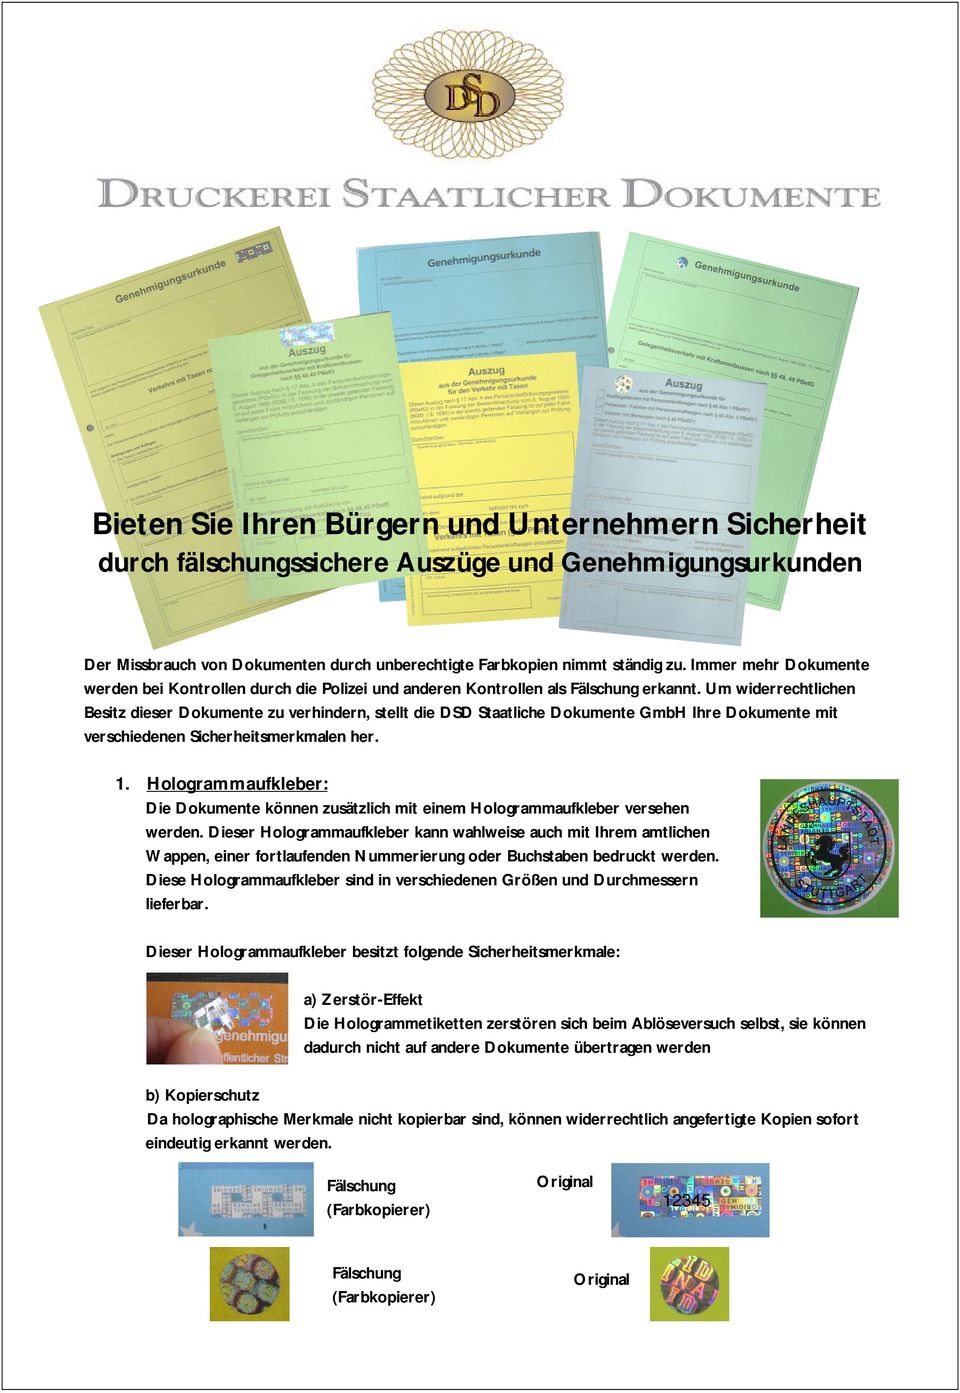 Um widerrechtlichen Besitz dieser Dokumente zu verhindern, stellt die DSD Staatliche Dokumente GmbH Ihre Dokumente mit verschiedenen Sicherheitsmerkmalen her. 1.